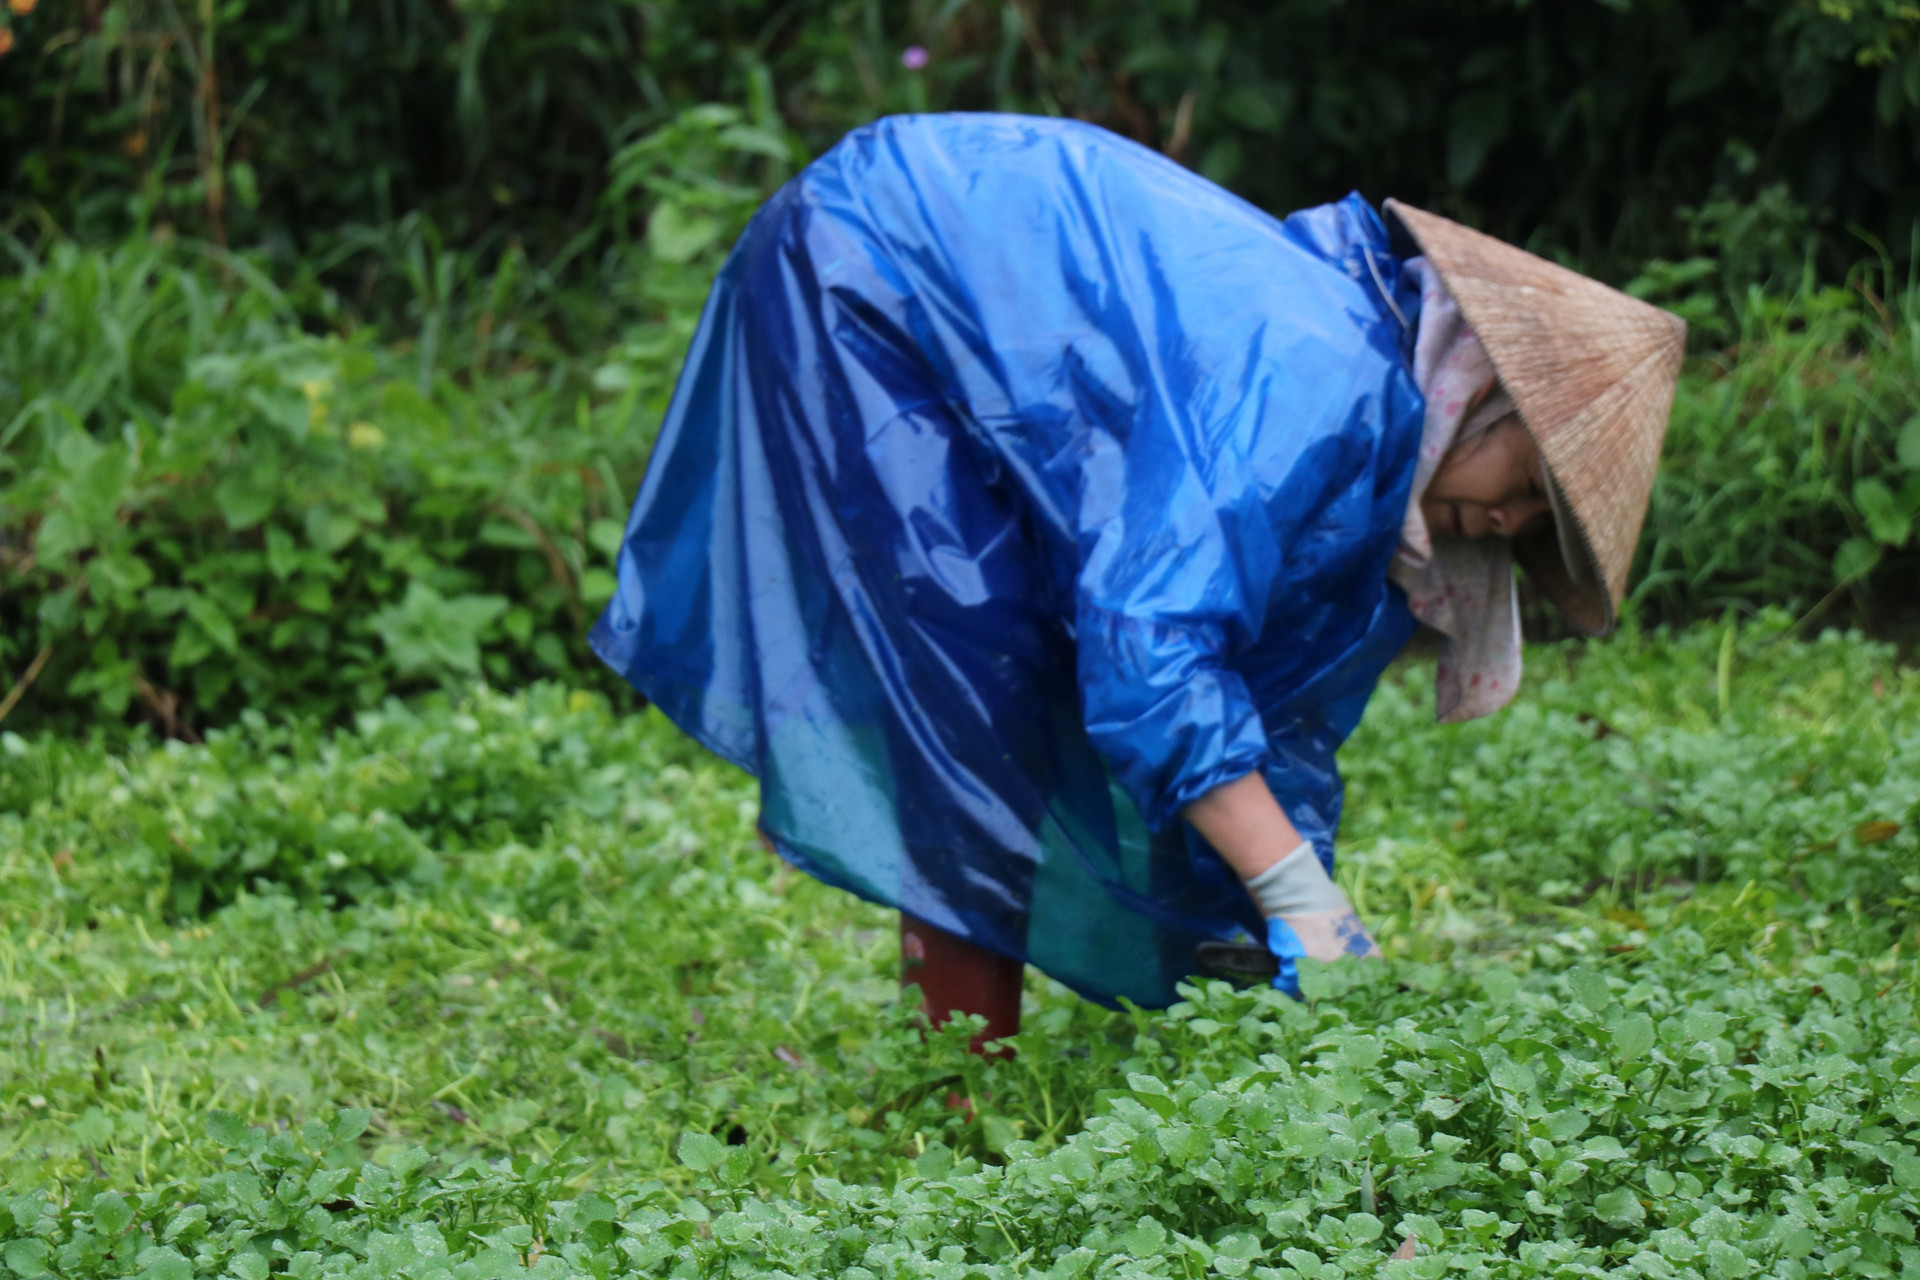 Tết Nguyên đán Quý Mão 2023, dù nhiều ngày thời tiết mưa lạnh, nhưng người dân vẫn ra đồng để thu hoạch rau xà lách xoong để bán cho khách hàng.